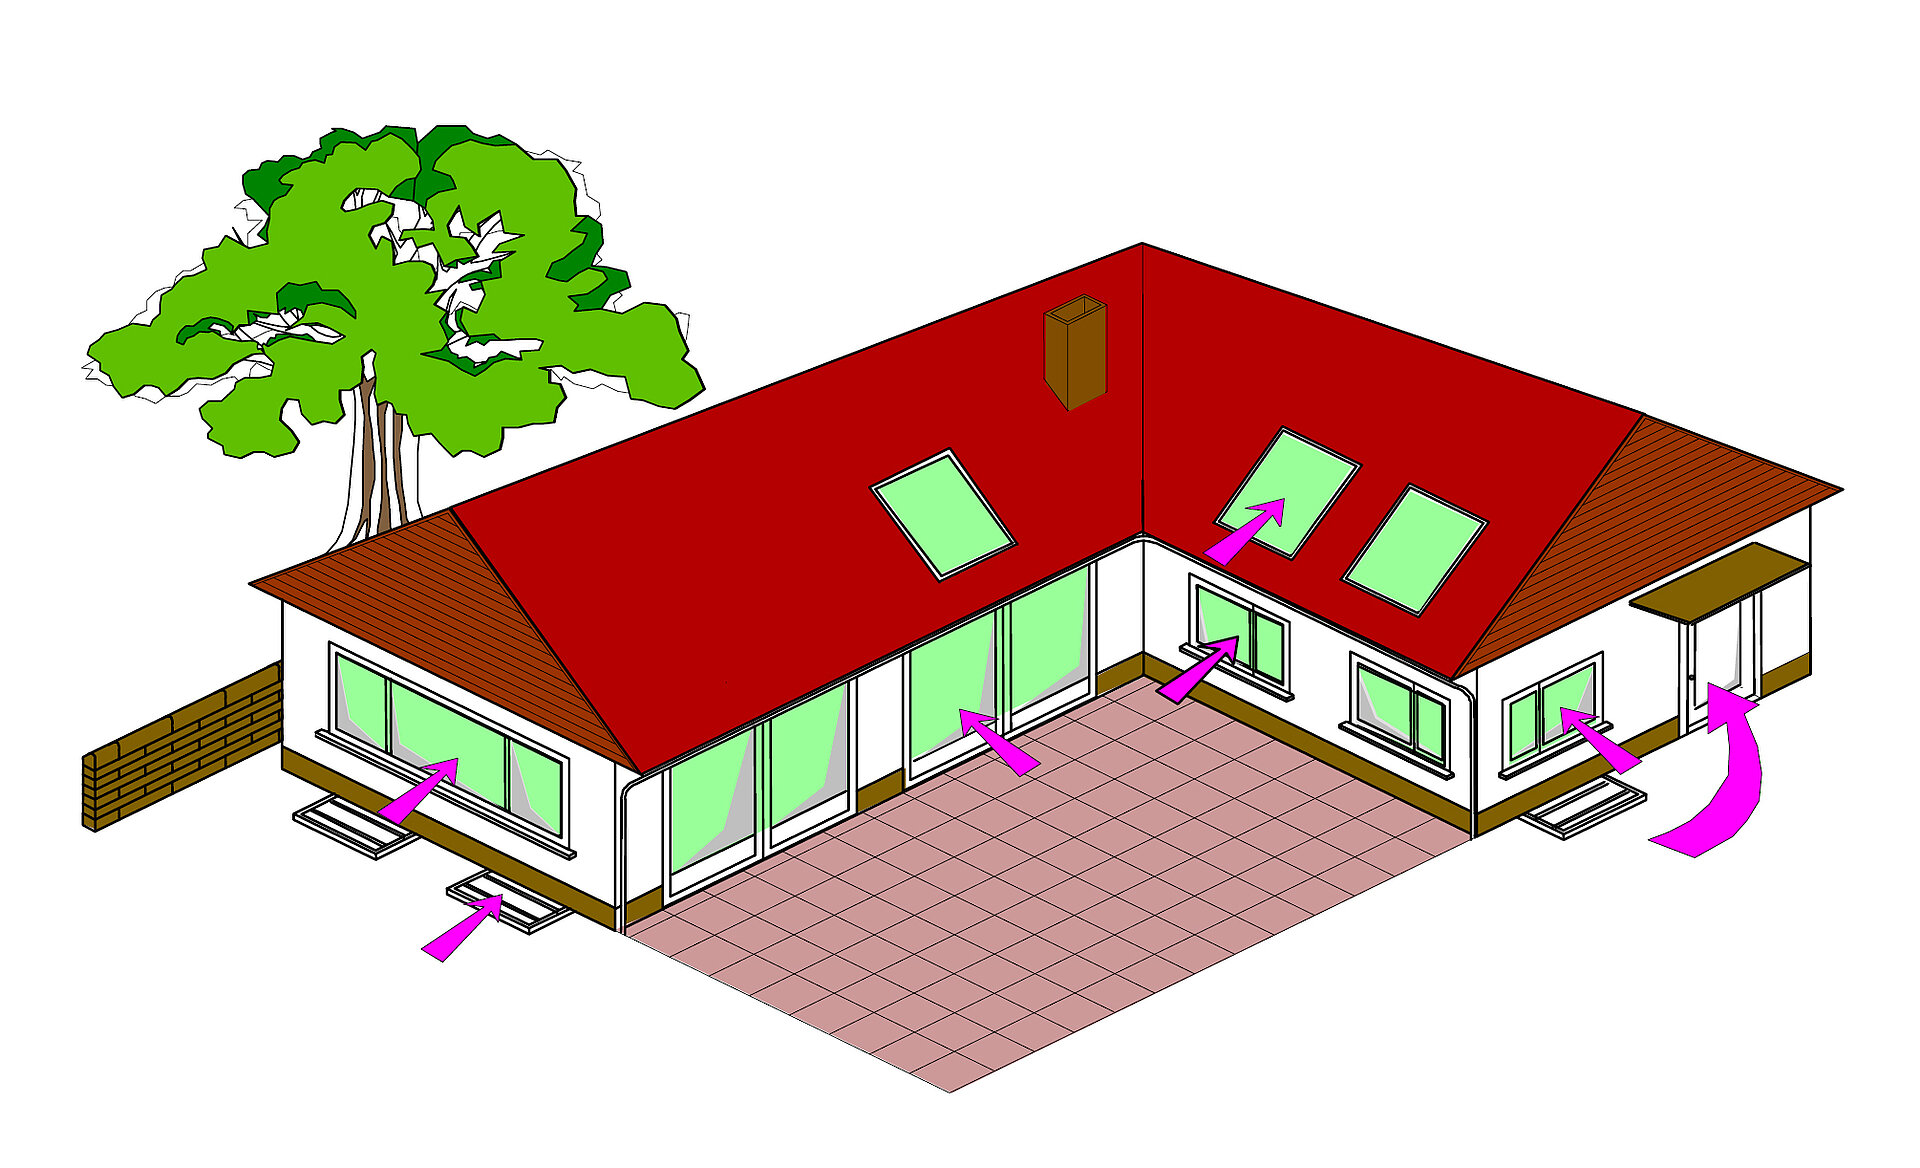 Das Schaubild zeigt ein Einfamilienhauses mit markierten, typischen Einbruchsstellen